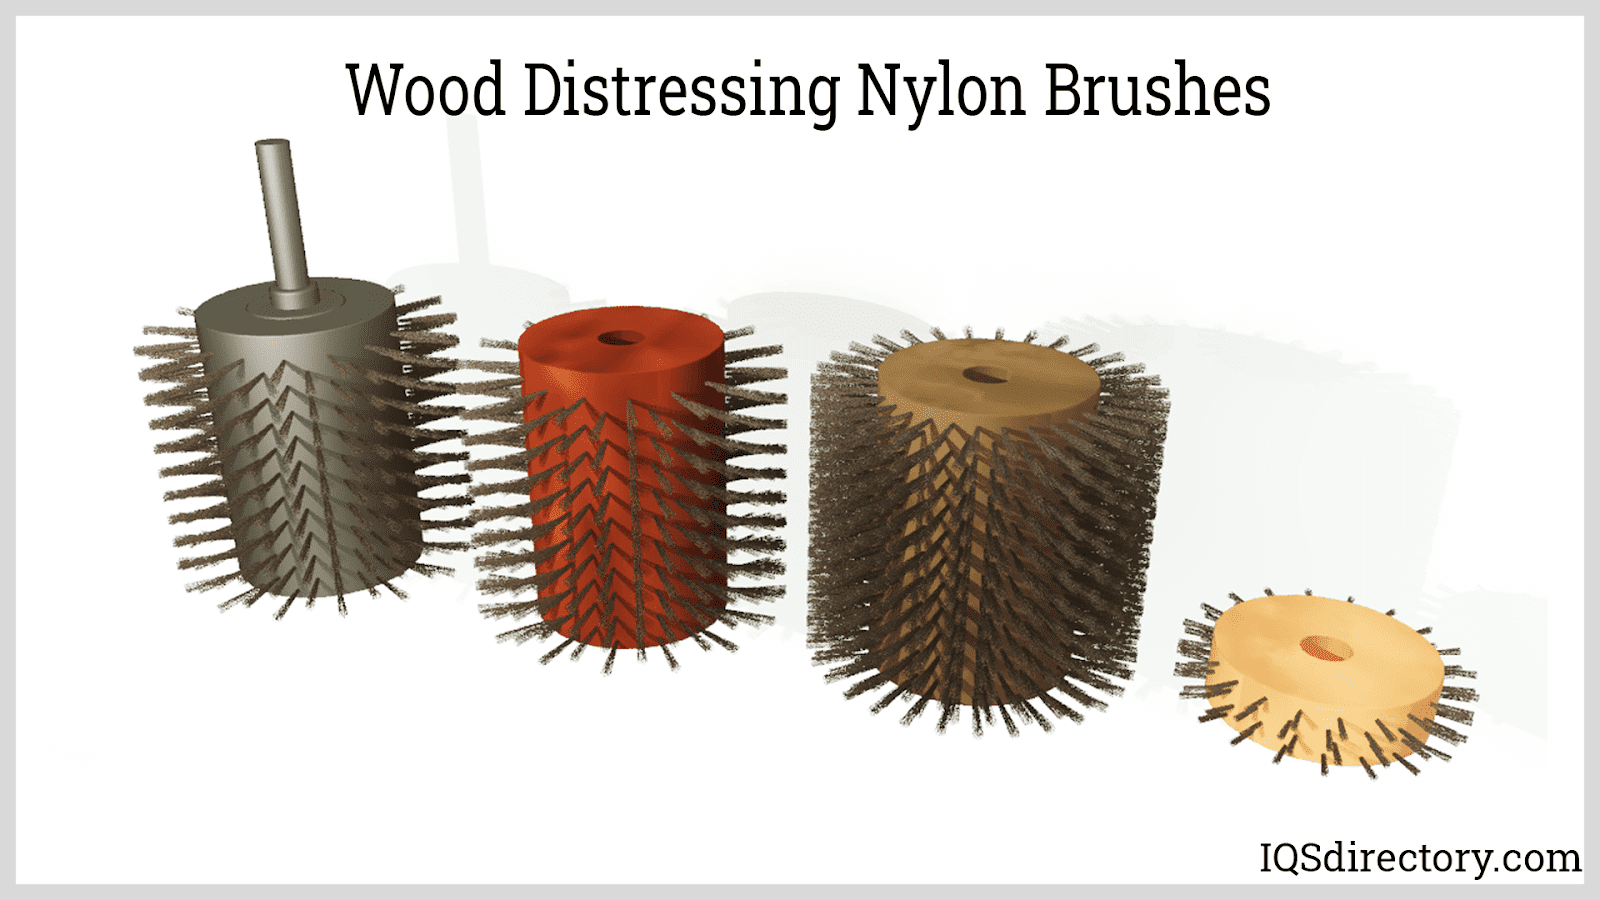 Wood Distressing Nylon Brushes